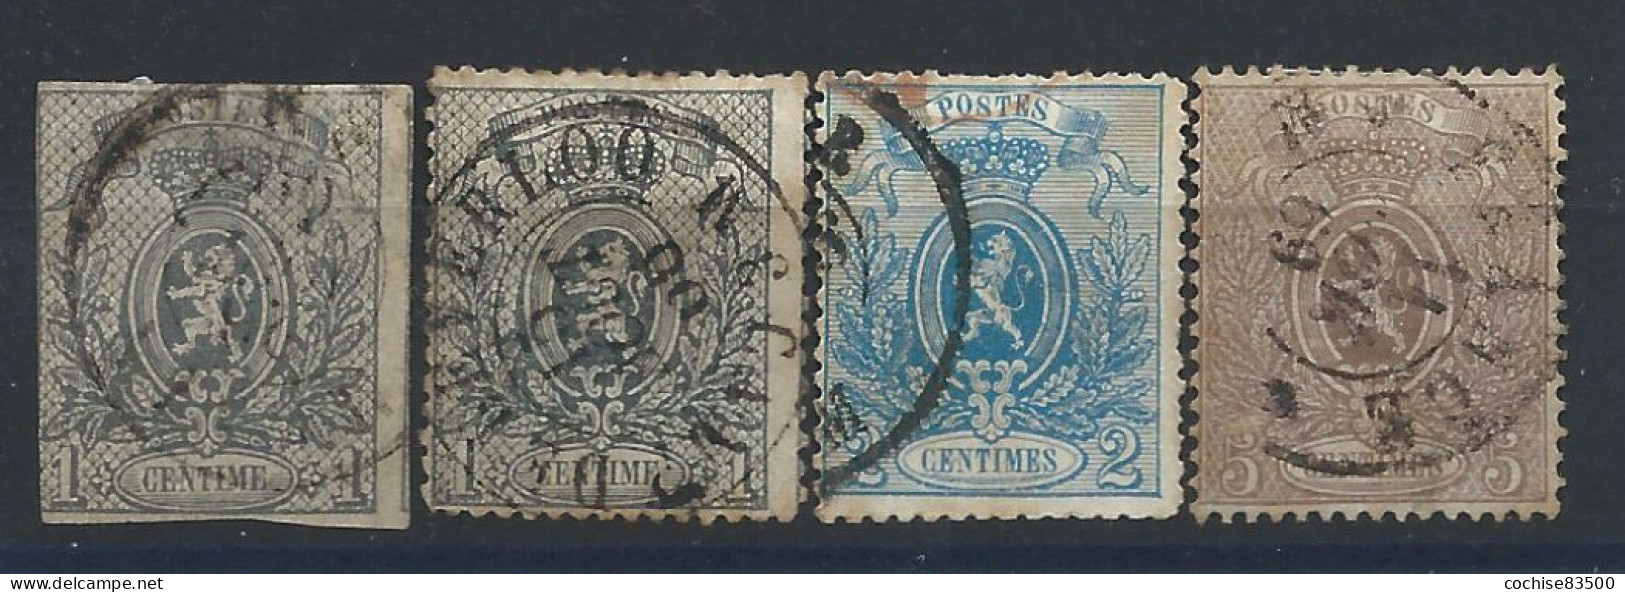 Belgique N°22/25 Obl (FU) 1866/67 - Armoiries - 1866-1867 Piccolo Leone